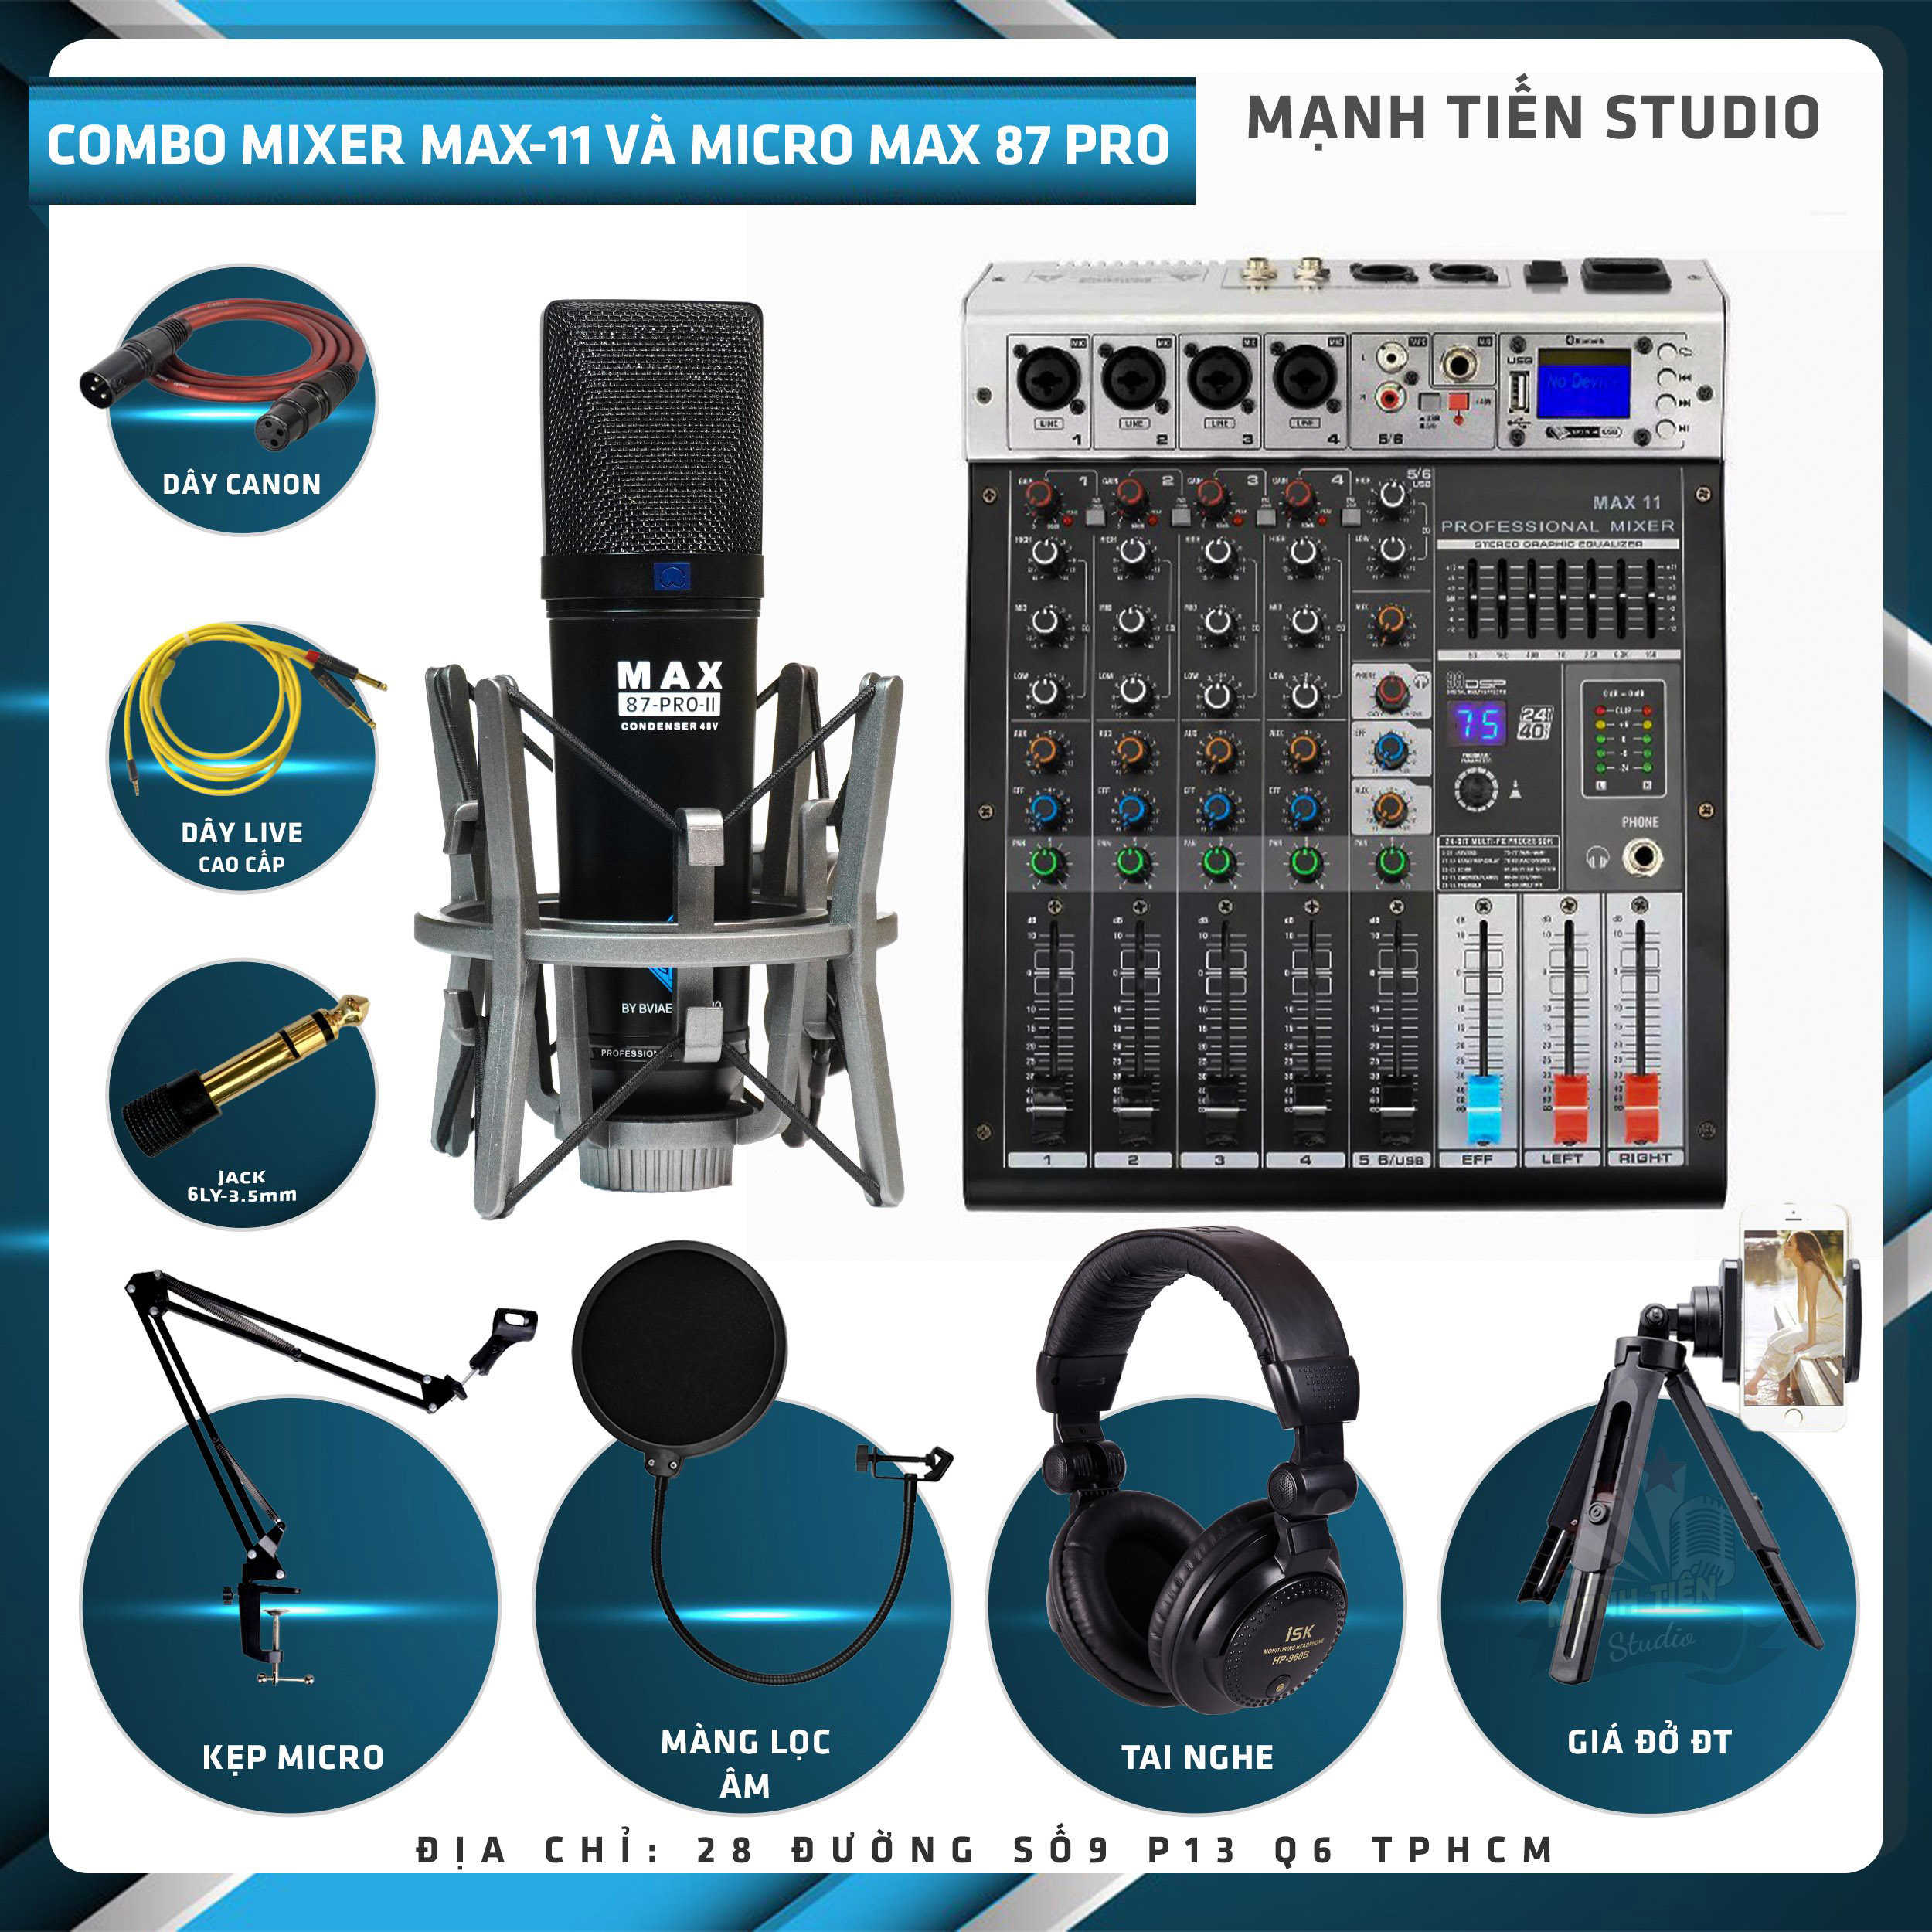 Combo thu âm, livestream Micro Max 87-Pro-II 2022, Mixer Max 11 - Kèm full phụ kiện kẹp micro, màng lọc, tai nghe, dây canon, dây livestream, giá đỡ ĐT - Hỗ trợ thu âm, karaoke online chuyên nghiệp - Hàng nhập khẩu